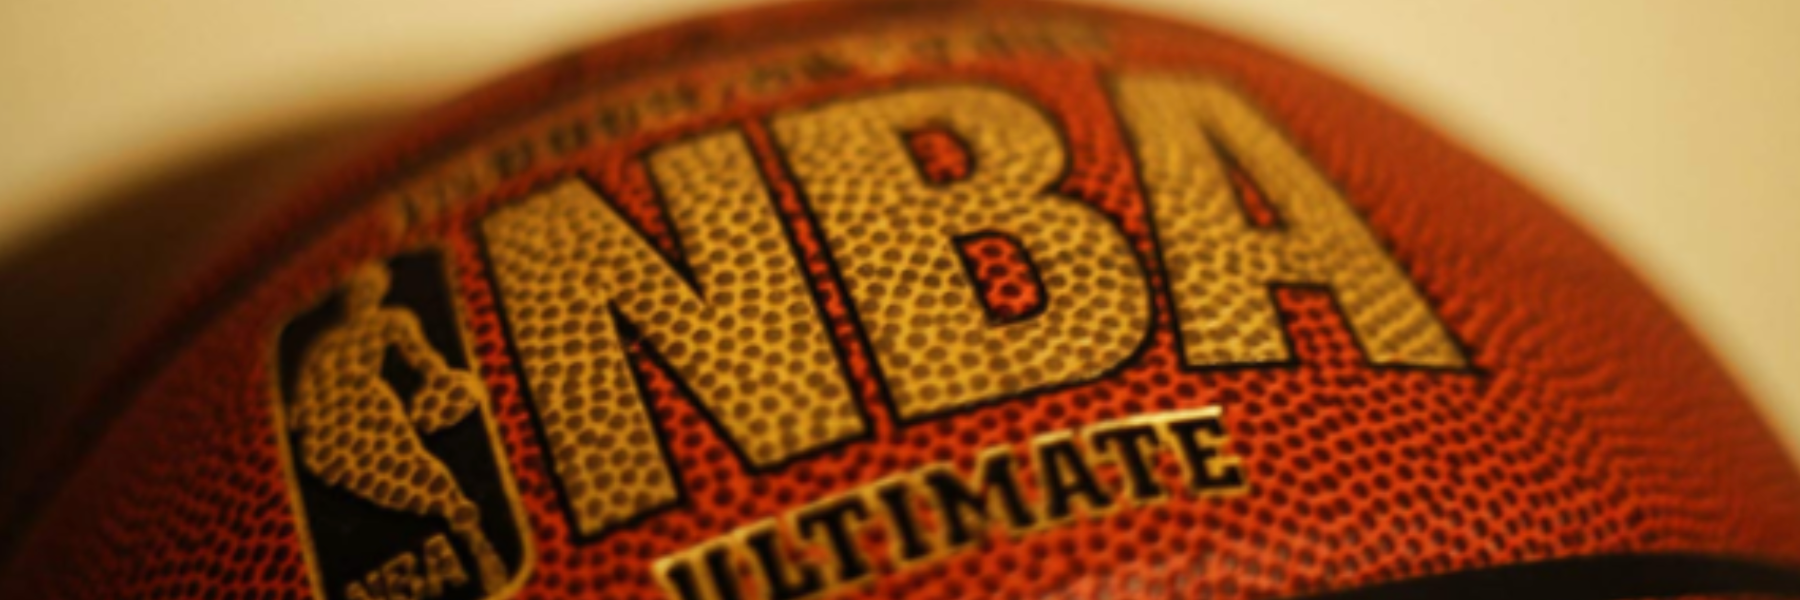 FF betting: analisi e consigli NBA per questa notte